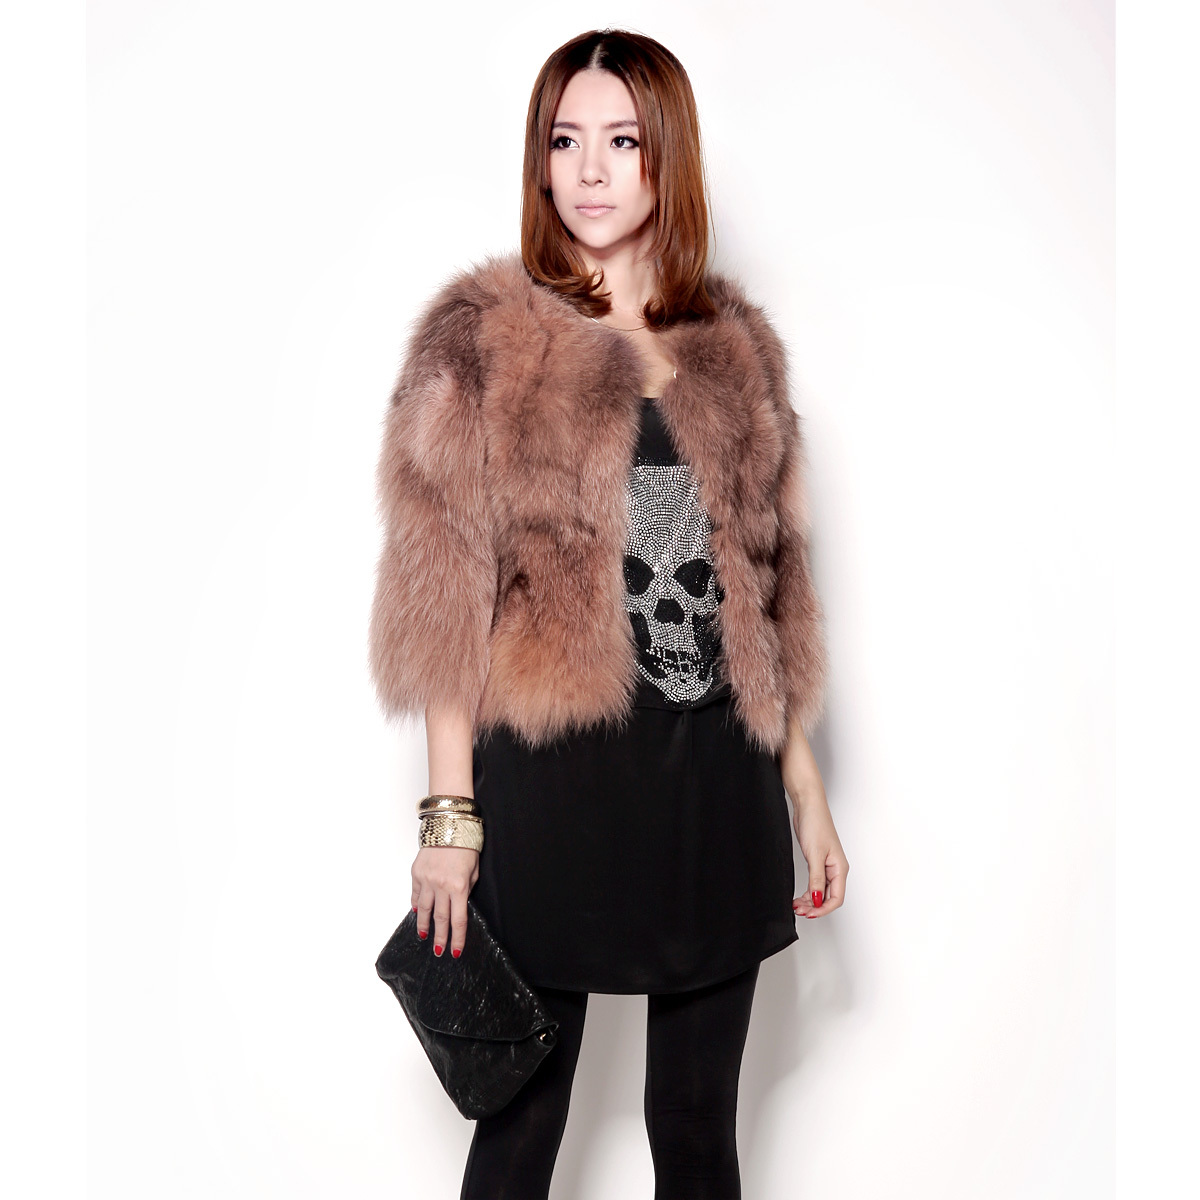 原创设计2013新款皮草大衣女裘皮女装中长款进口整张狐狸毛外套